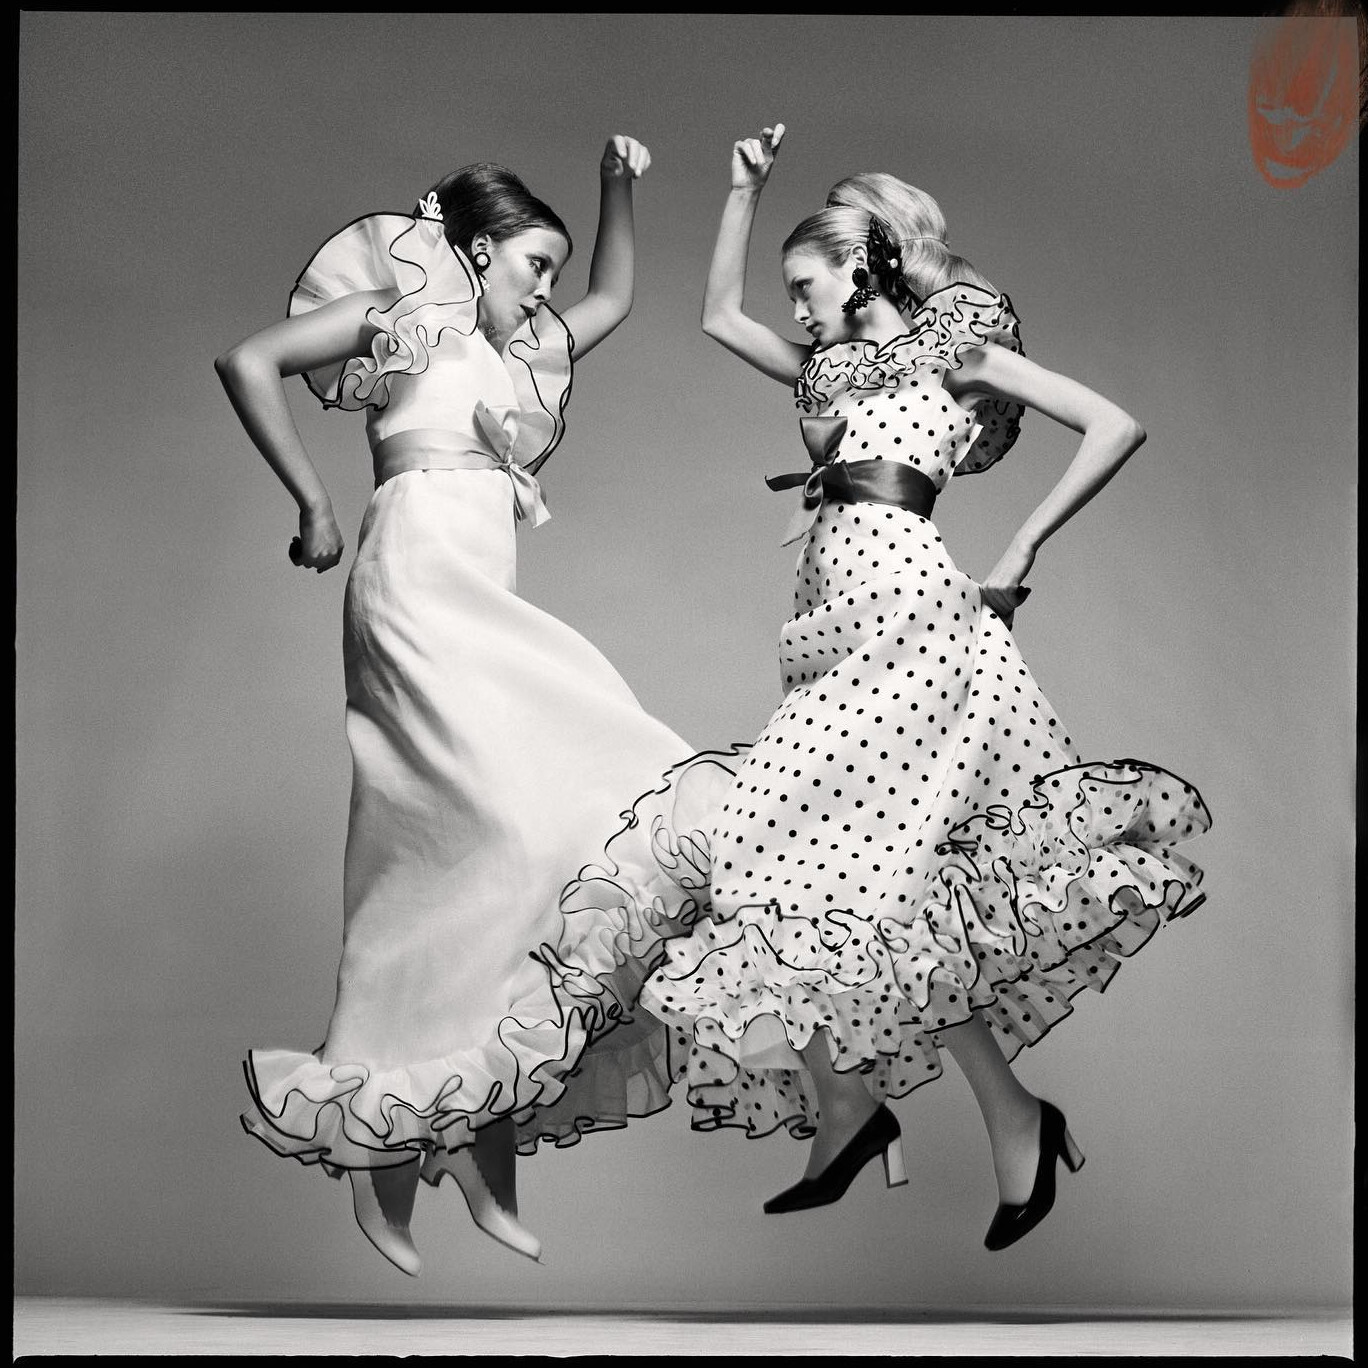 Пенелопа Три и Твигги, платья от Ива Сен-Лорана, прическа от Ары Галлант, Нью-Йорк, 24 января 1968 года.  Фотограф Ричард Аведон